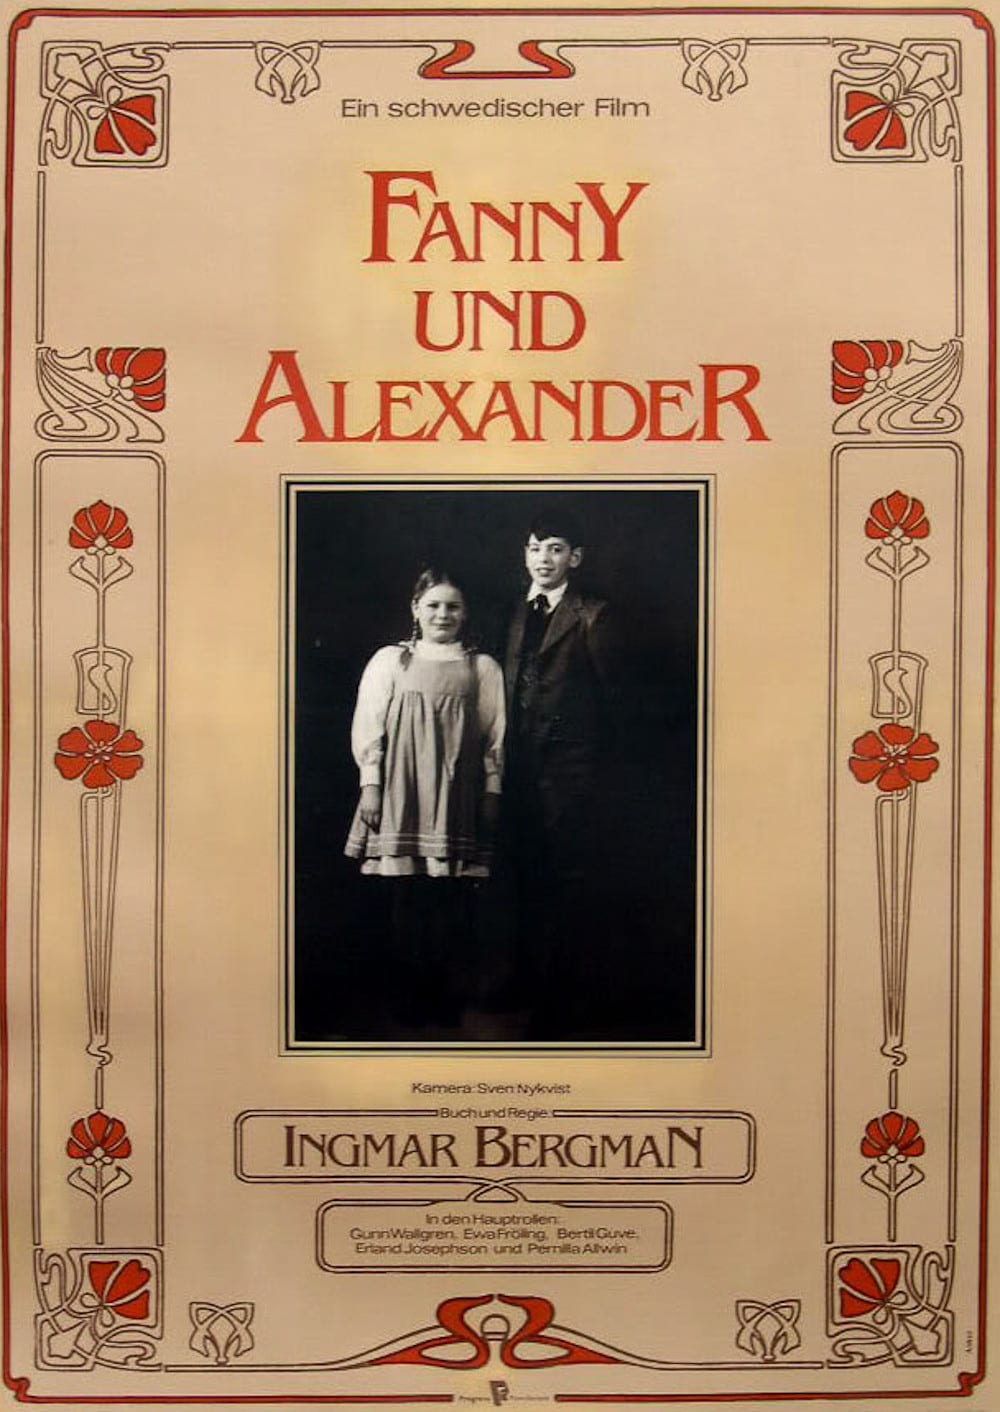 Plakat von "Fanny und Alexander"